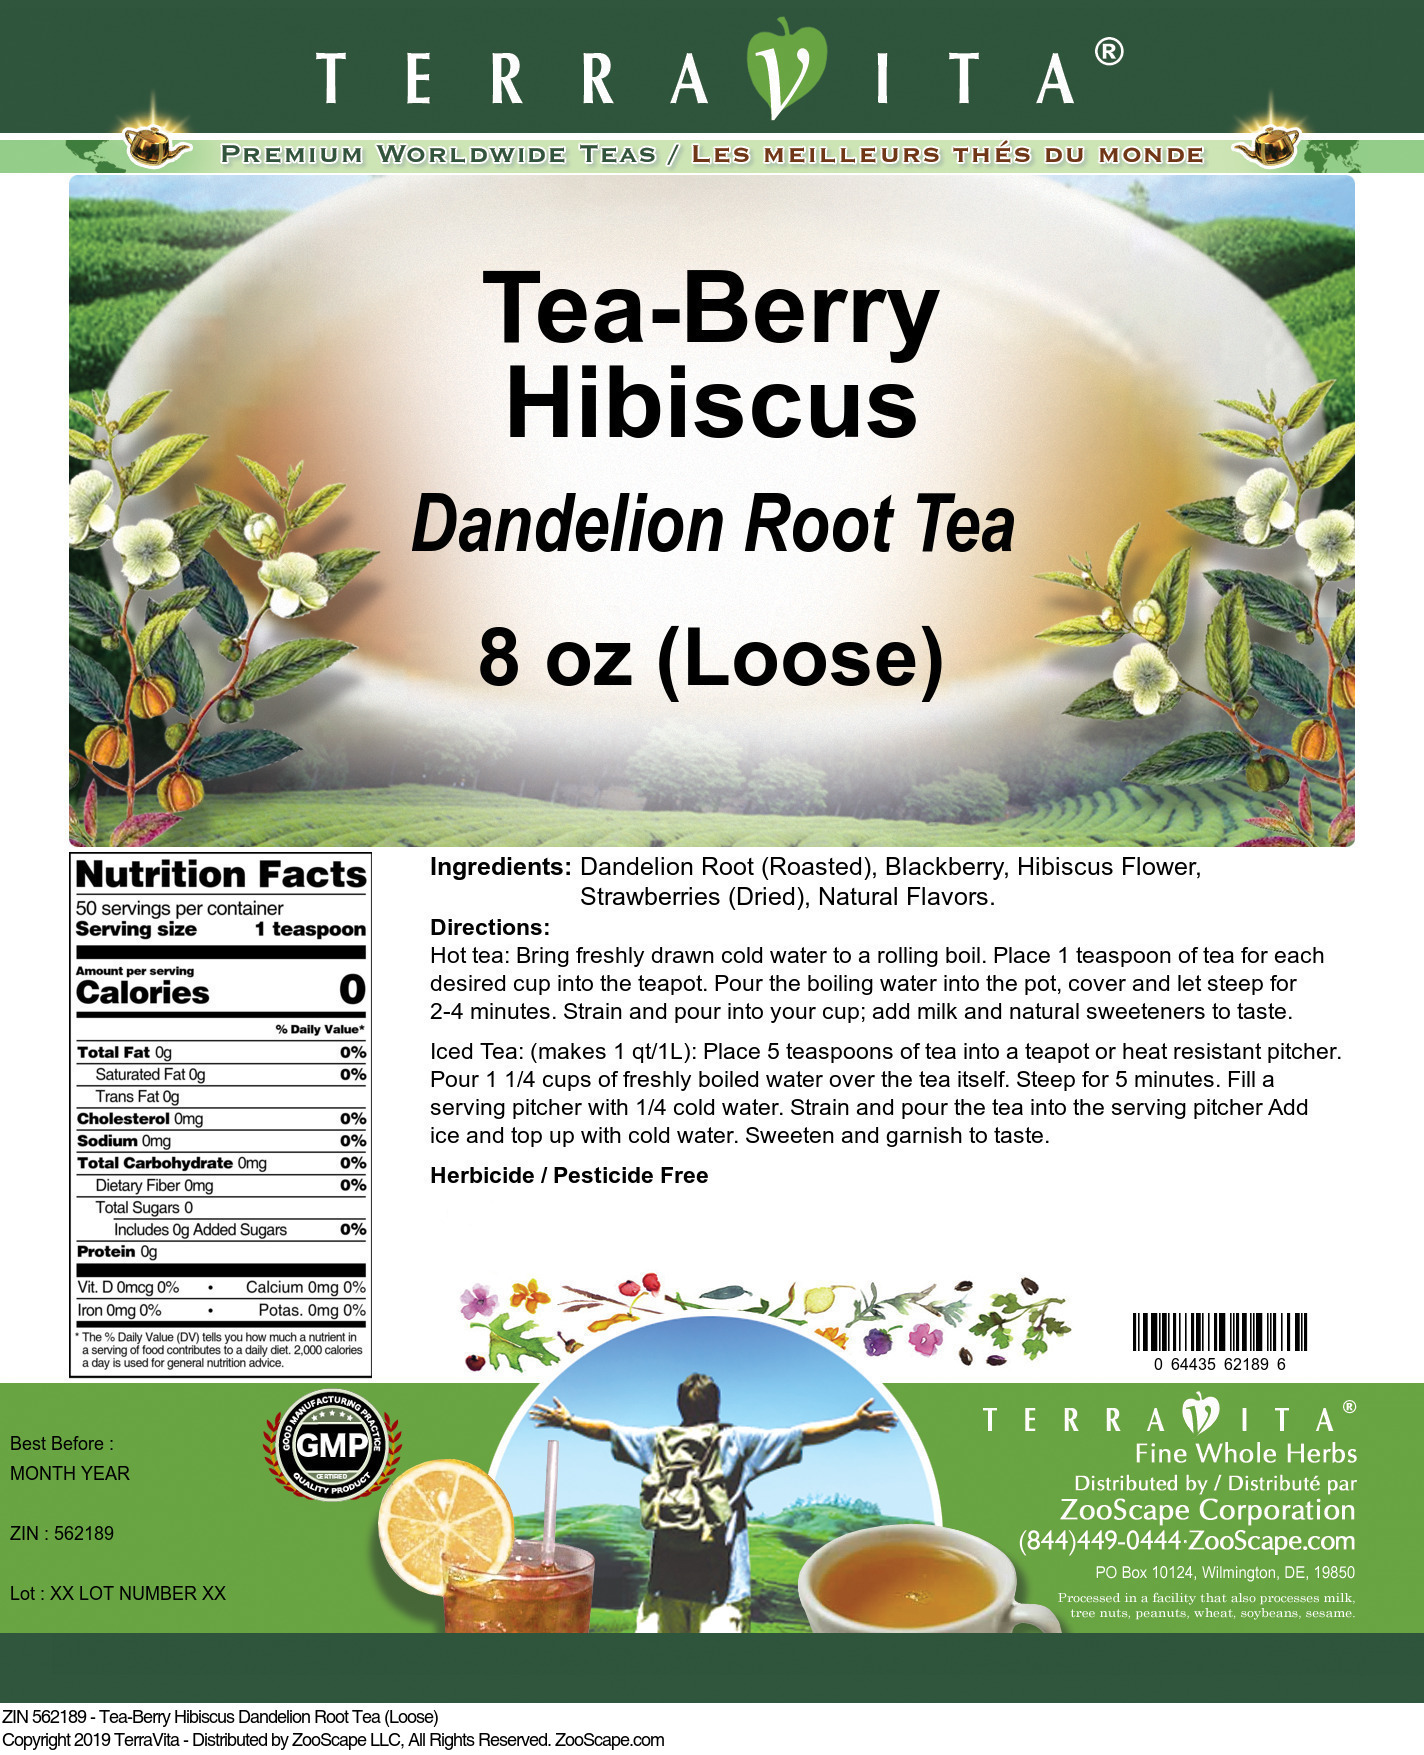 Tea-Berry Hibiscus Dandelion Root Tea (Loose) - Label